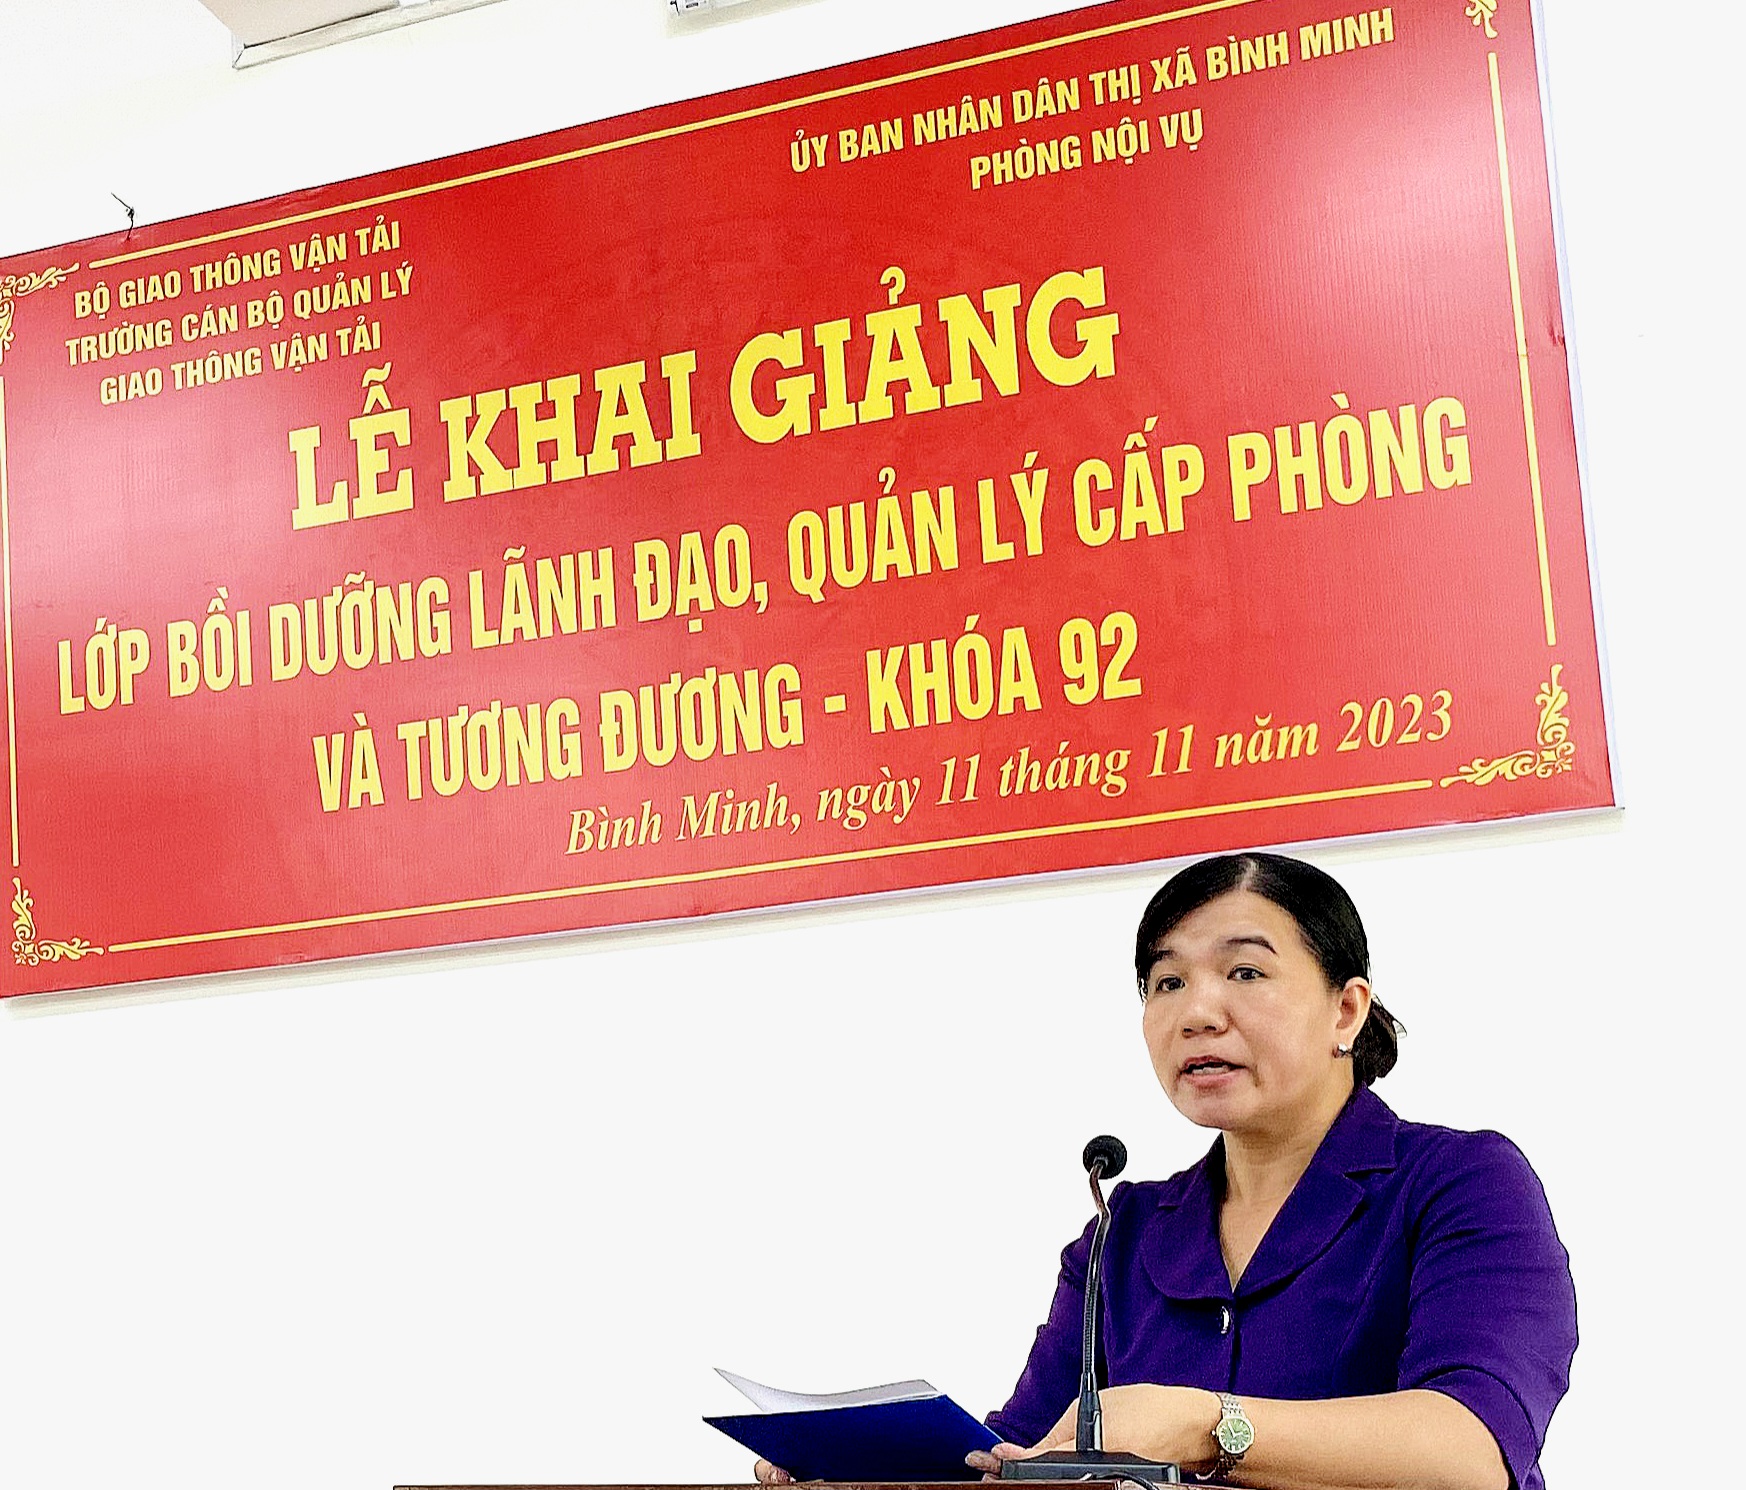 Khai giảng lớp Bồi dưỡng lãnh đạo, quản lý cấp phòng và tương đương tại thị xã Bình Minh, tỉnh Vĩnh Long